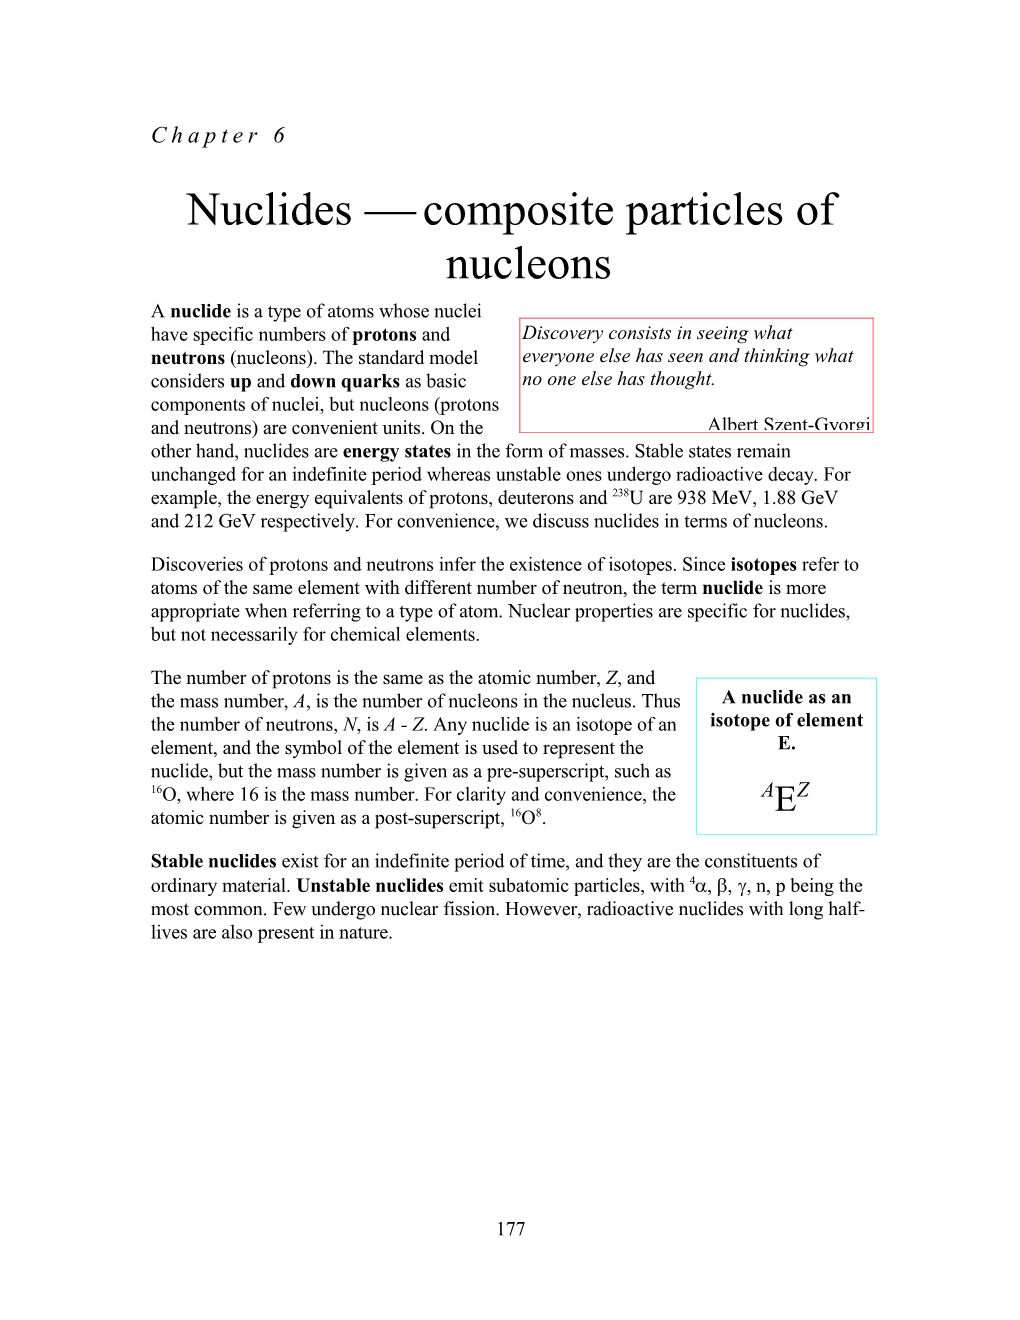 Nuclides Composite Particles of Nucleons